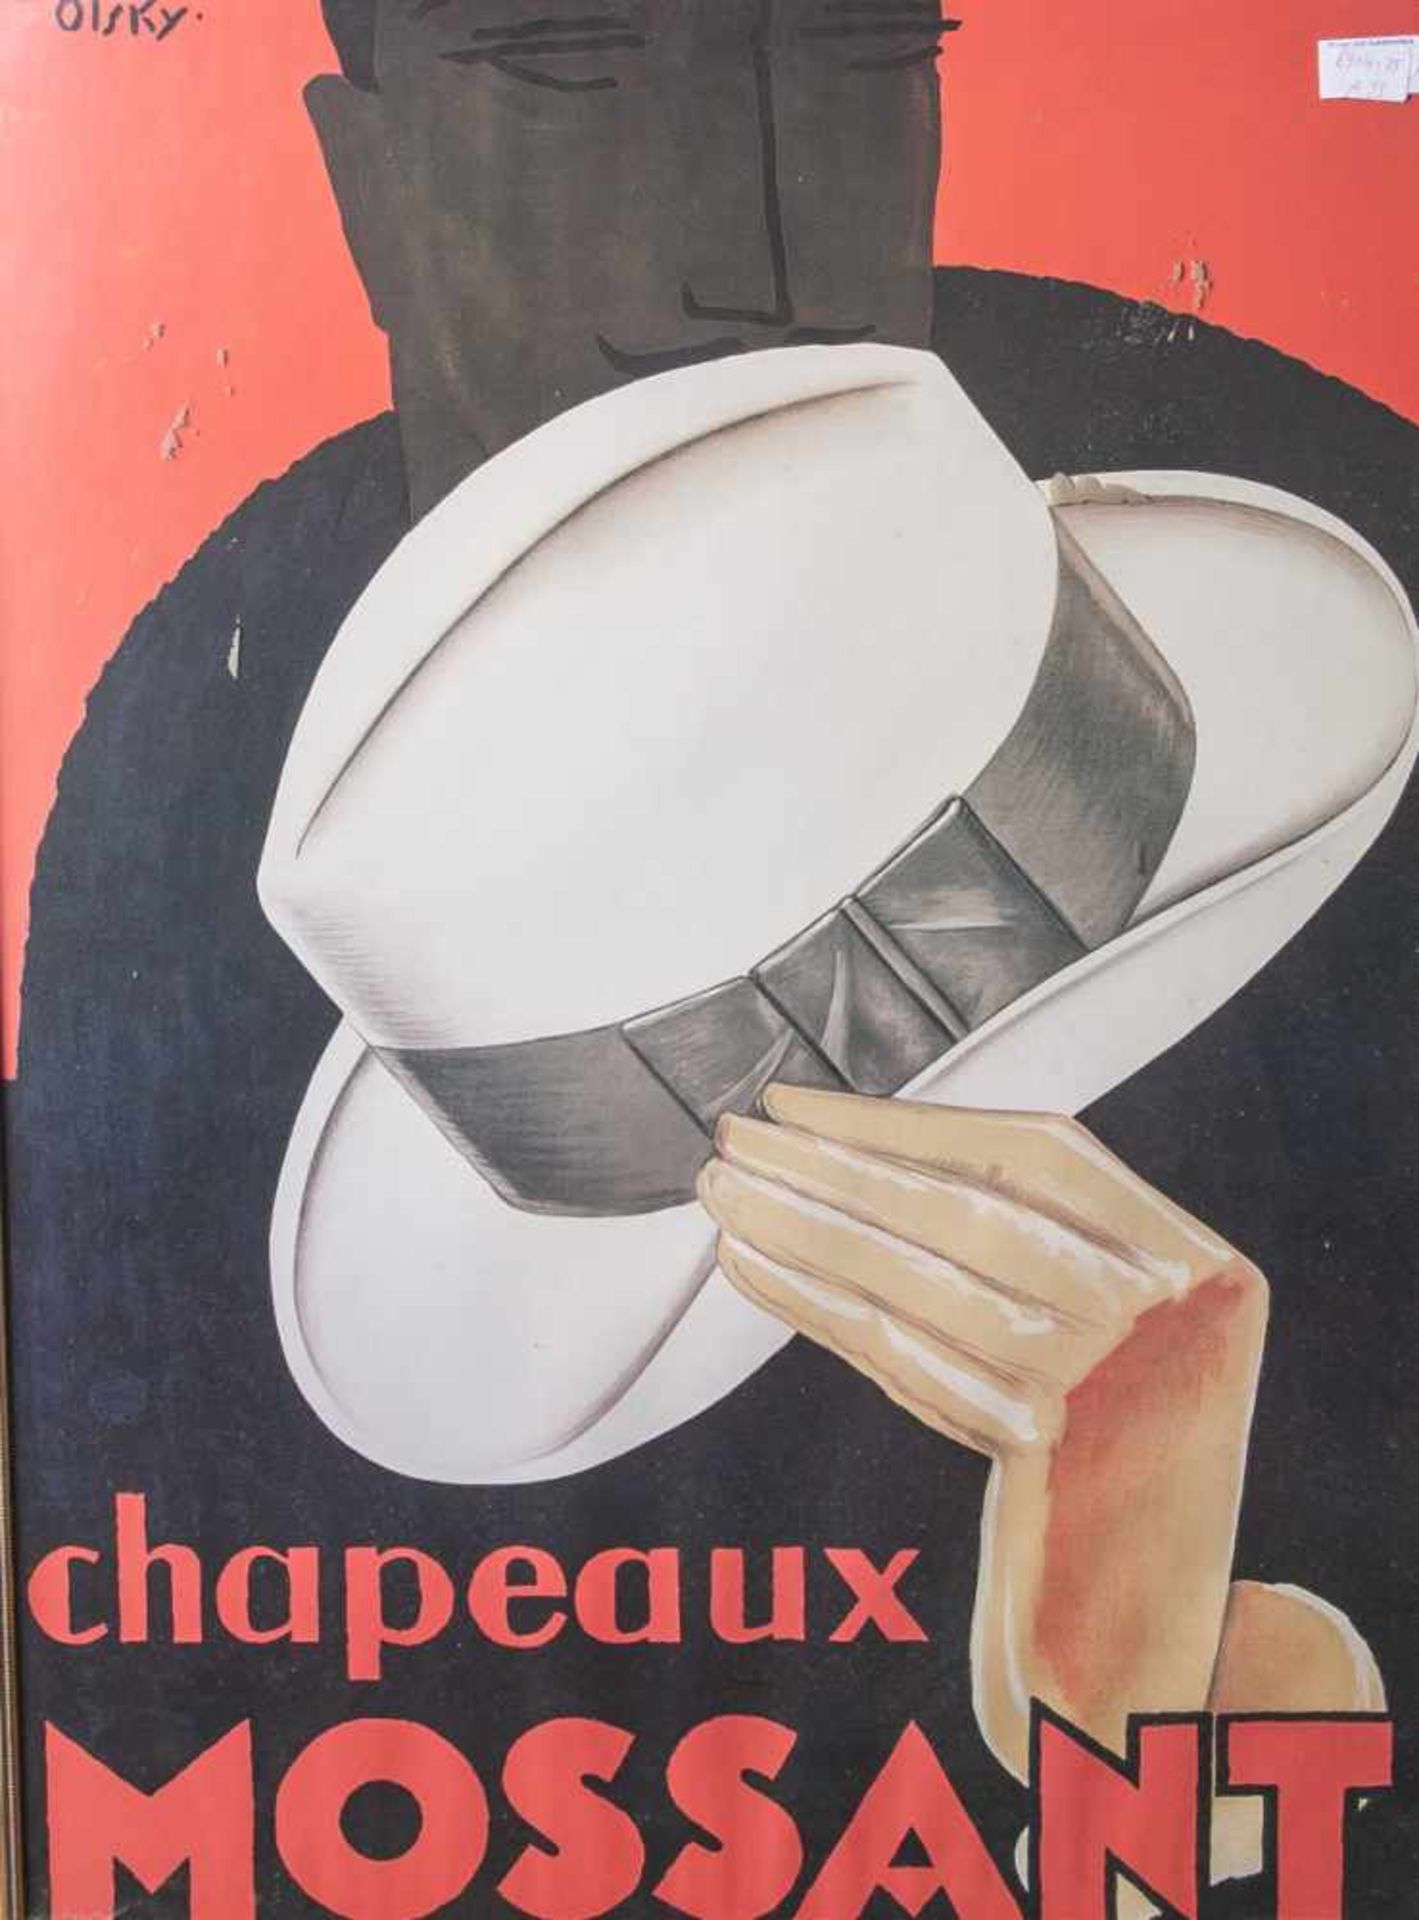 Plakat, Chapeaux Mossant, 20. Jahrhundert, im Stil der 20er Jahre, wohl Nachdruck,Schatten eines